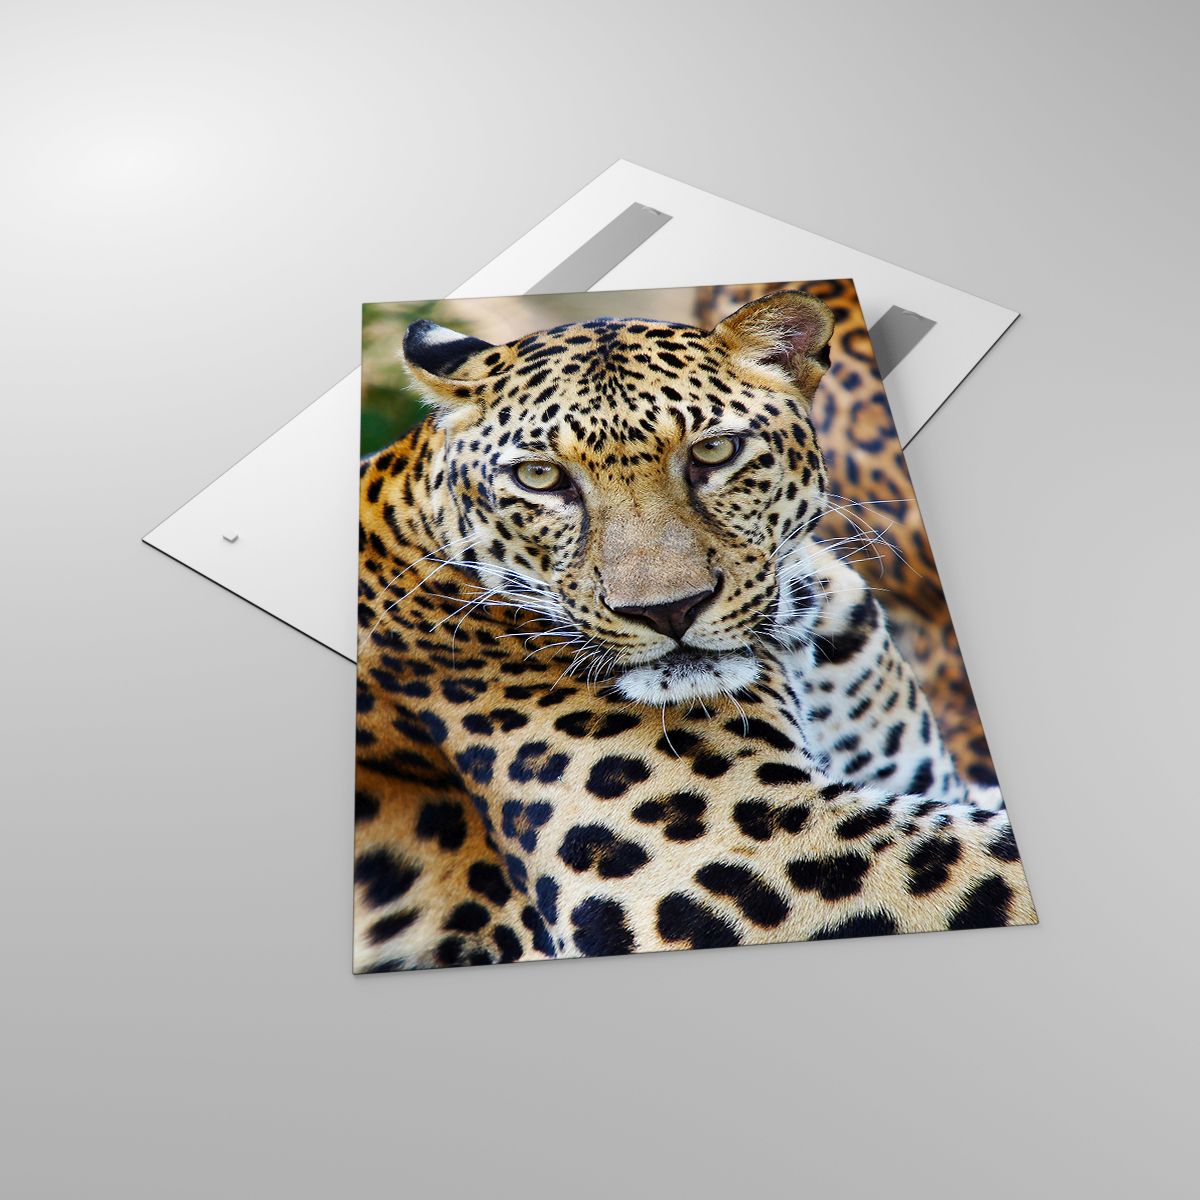 Quadri Animali, Quadri Leopardo, Quadri Africa, Quadri Giungla, Quadri Animale Selvaggio